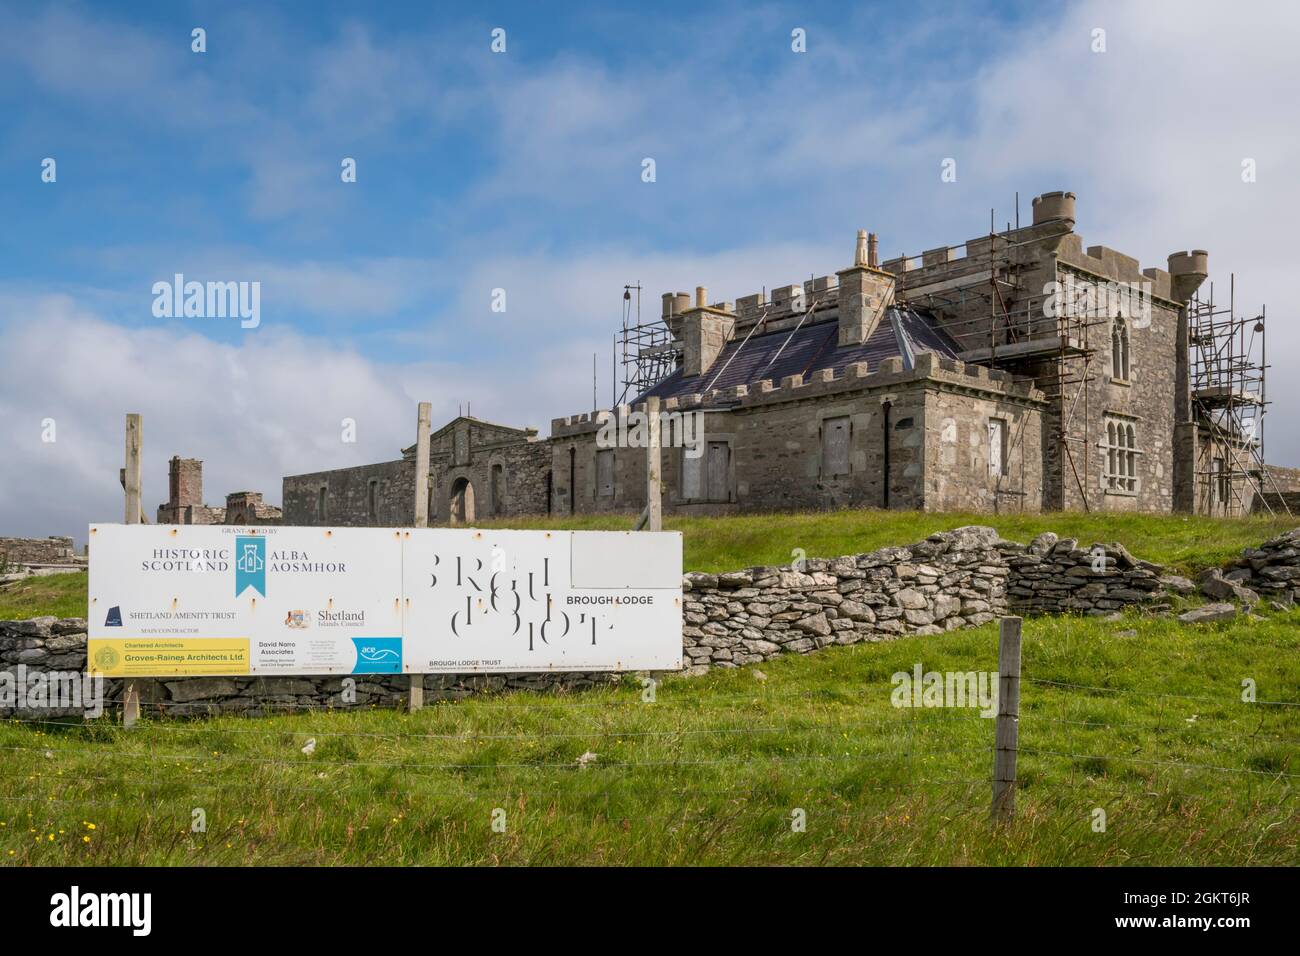 Brough Lodge en la isla de Fetlar, Shetland, fue construido en 1820. La junta de Escocia histórica ofrece detalles de los trabajos de restauración realizados por el Brough Lodge Trust Foto de stock